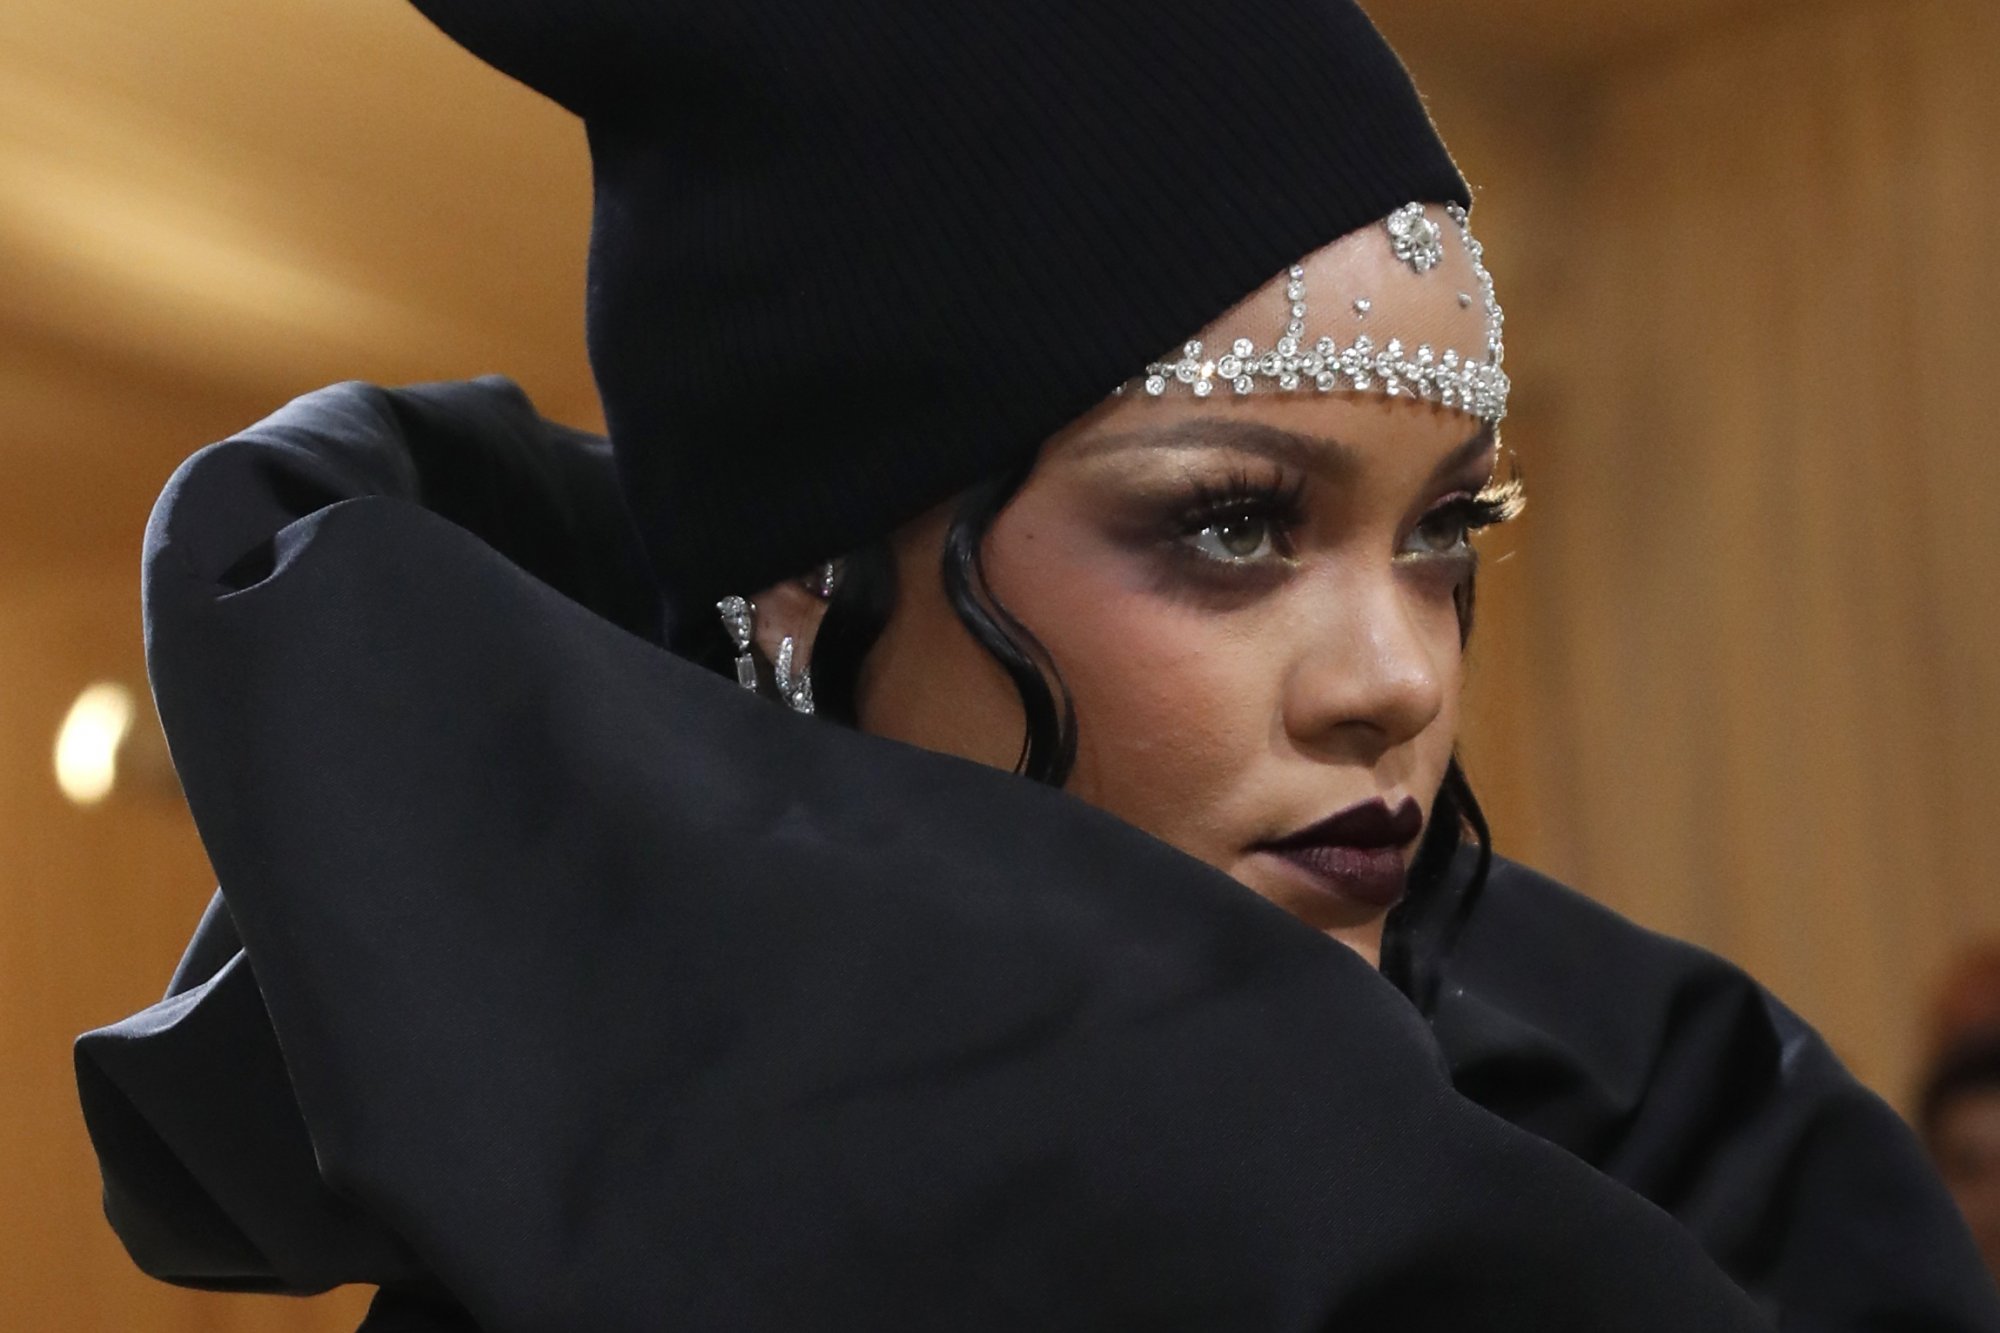 Η Rihanna αποκηρύσσει τις στυλιστικές της επιλογές  - Η επίδειξη των θηλών είναι το «fashion ick» της